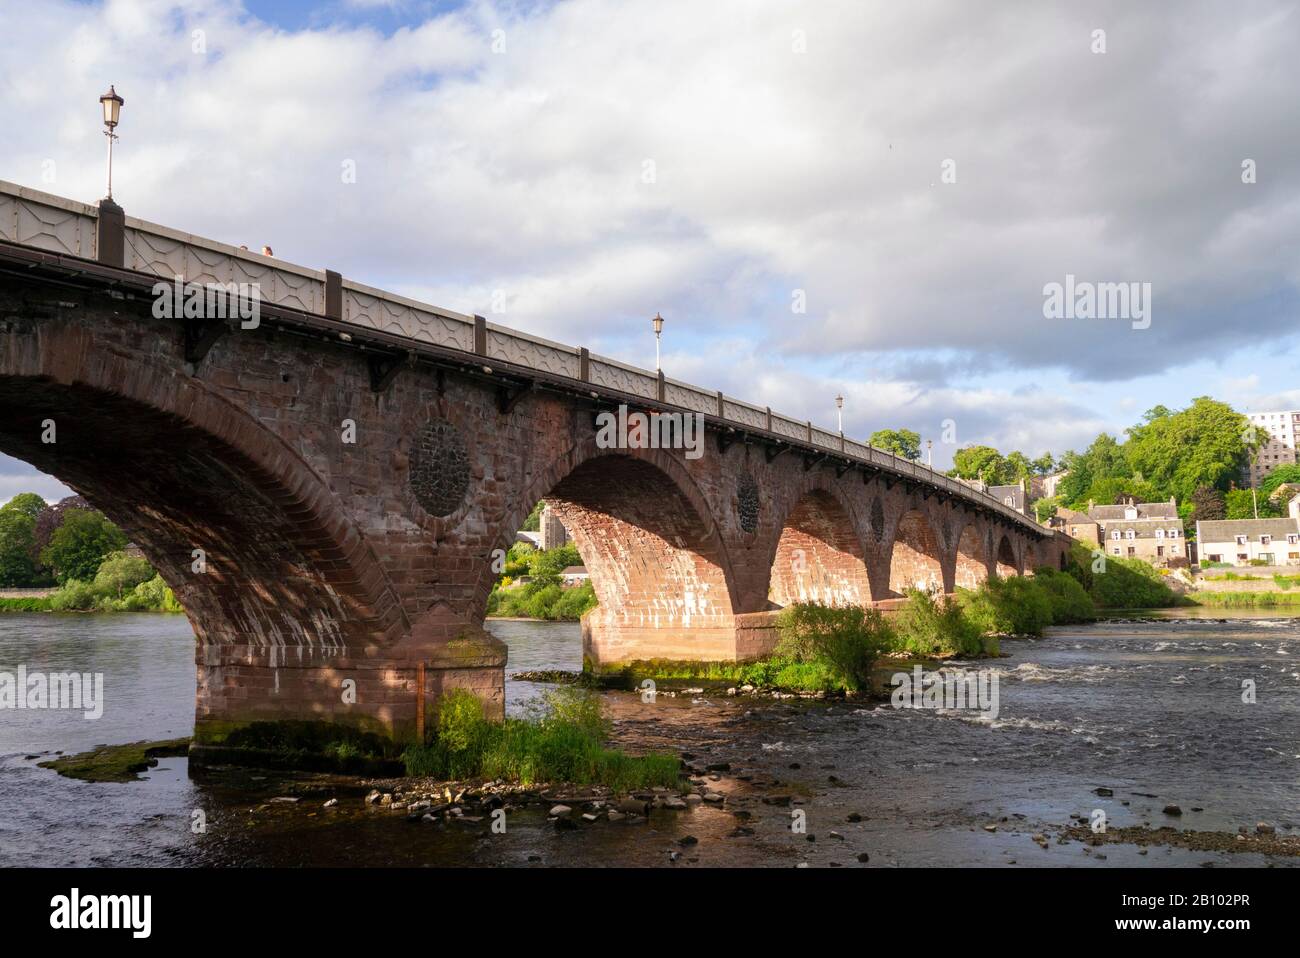 Le vieux pont de Perth Perthshire Ecosse Royaume-Uni Banque D'Images